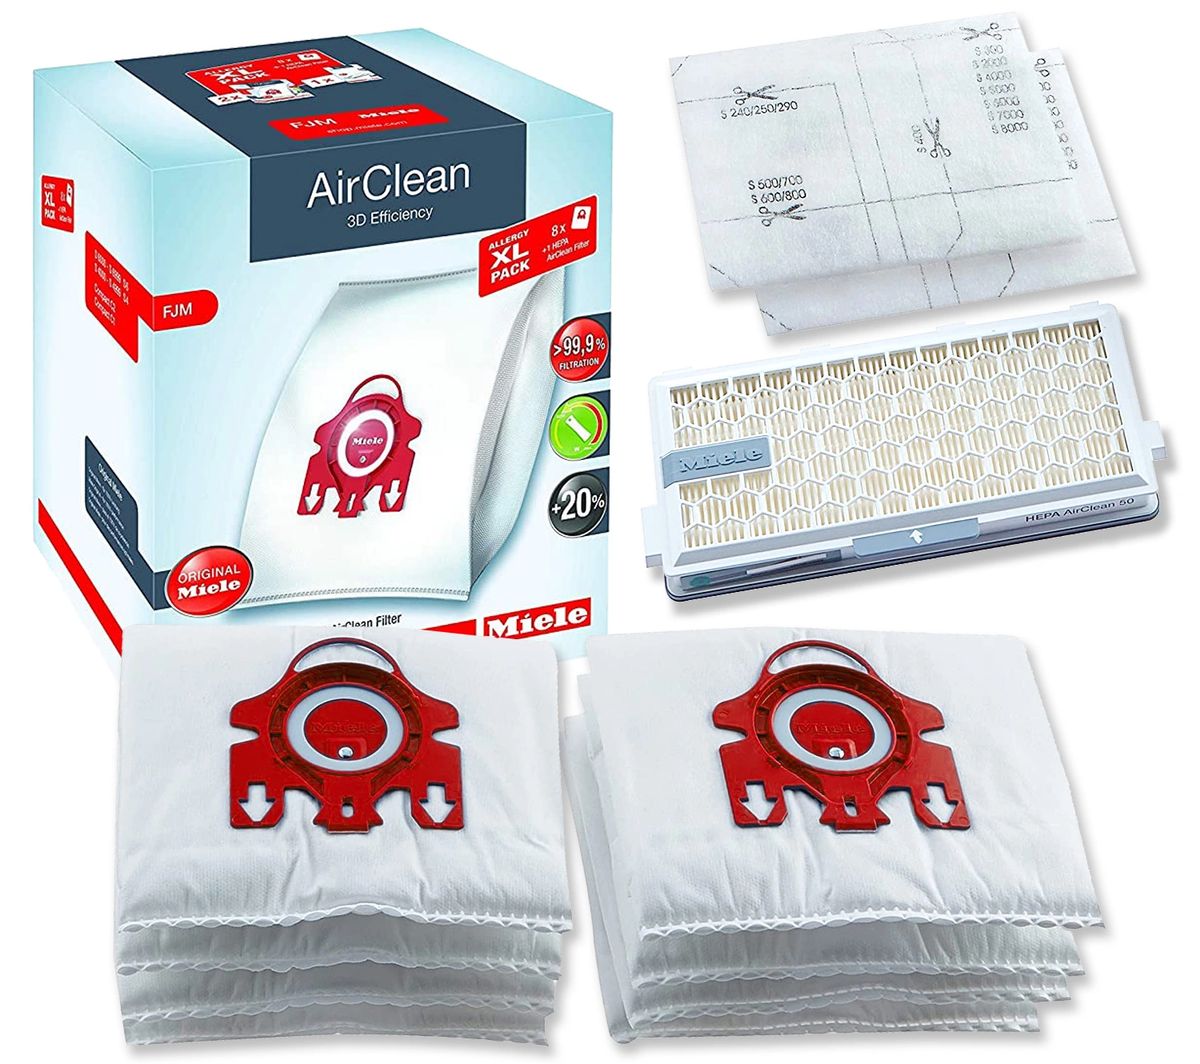 HA50 Hepa Miele Performance Pack AirClean 3D Efficiency FilterBags™ Type FJM